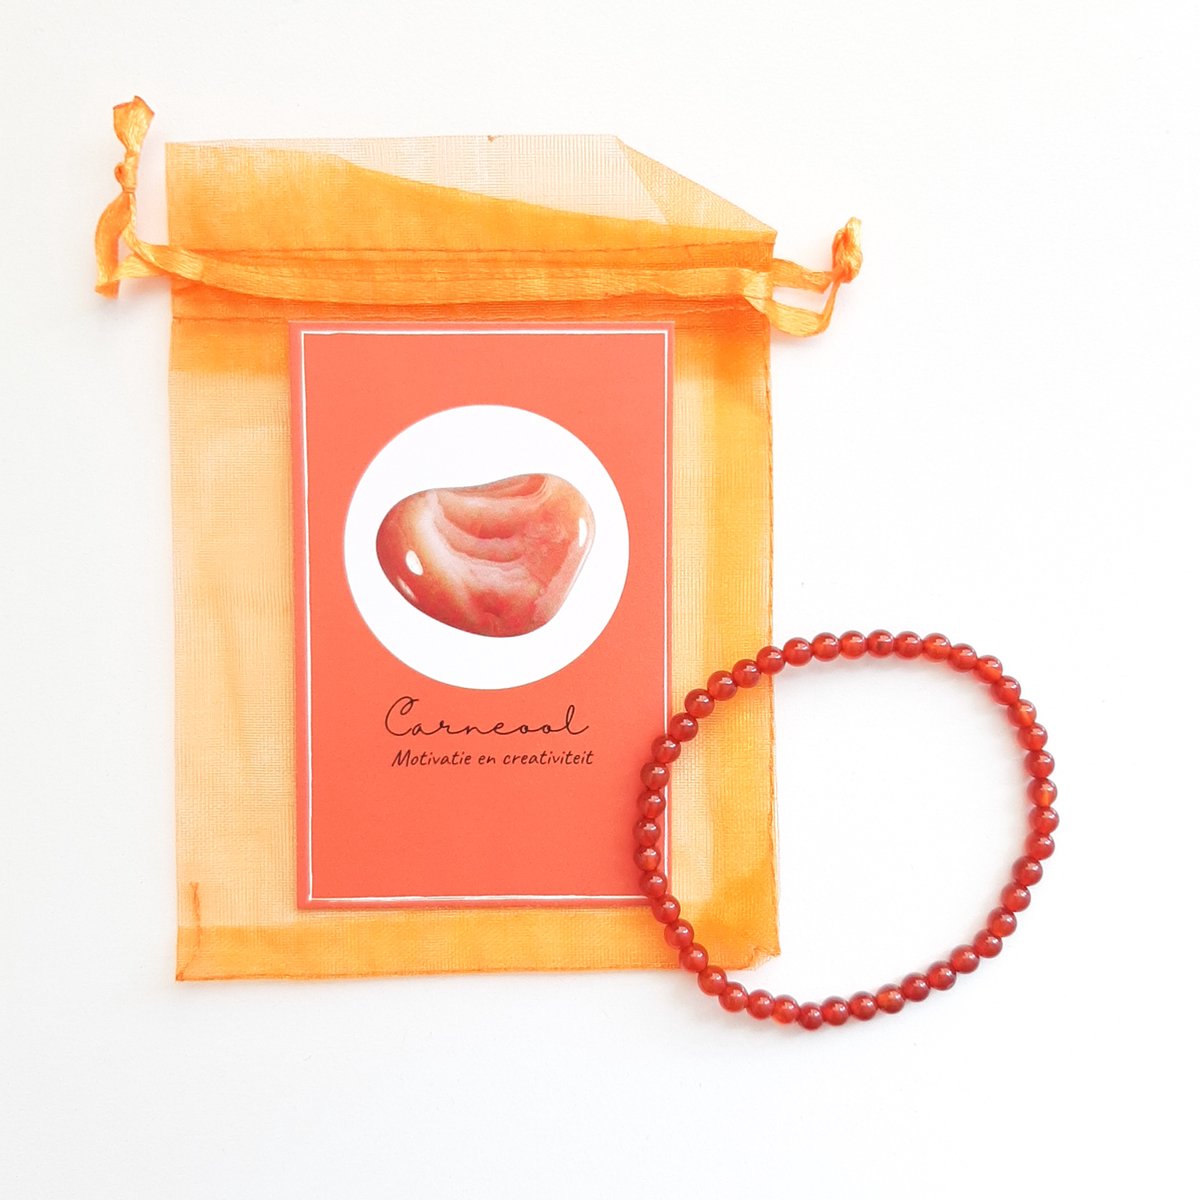 Edelsteen armband in zakje ''carneool'' motivatie en creativiteit, 4mm kralen, elastisch, cadeautje